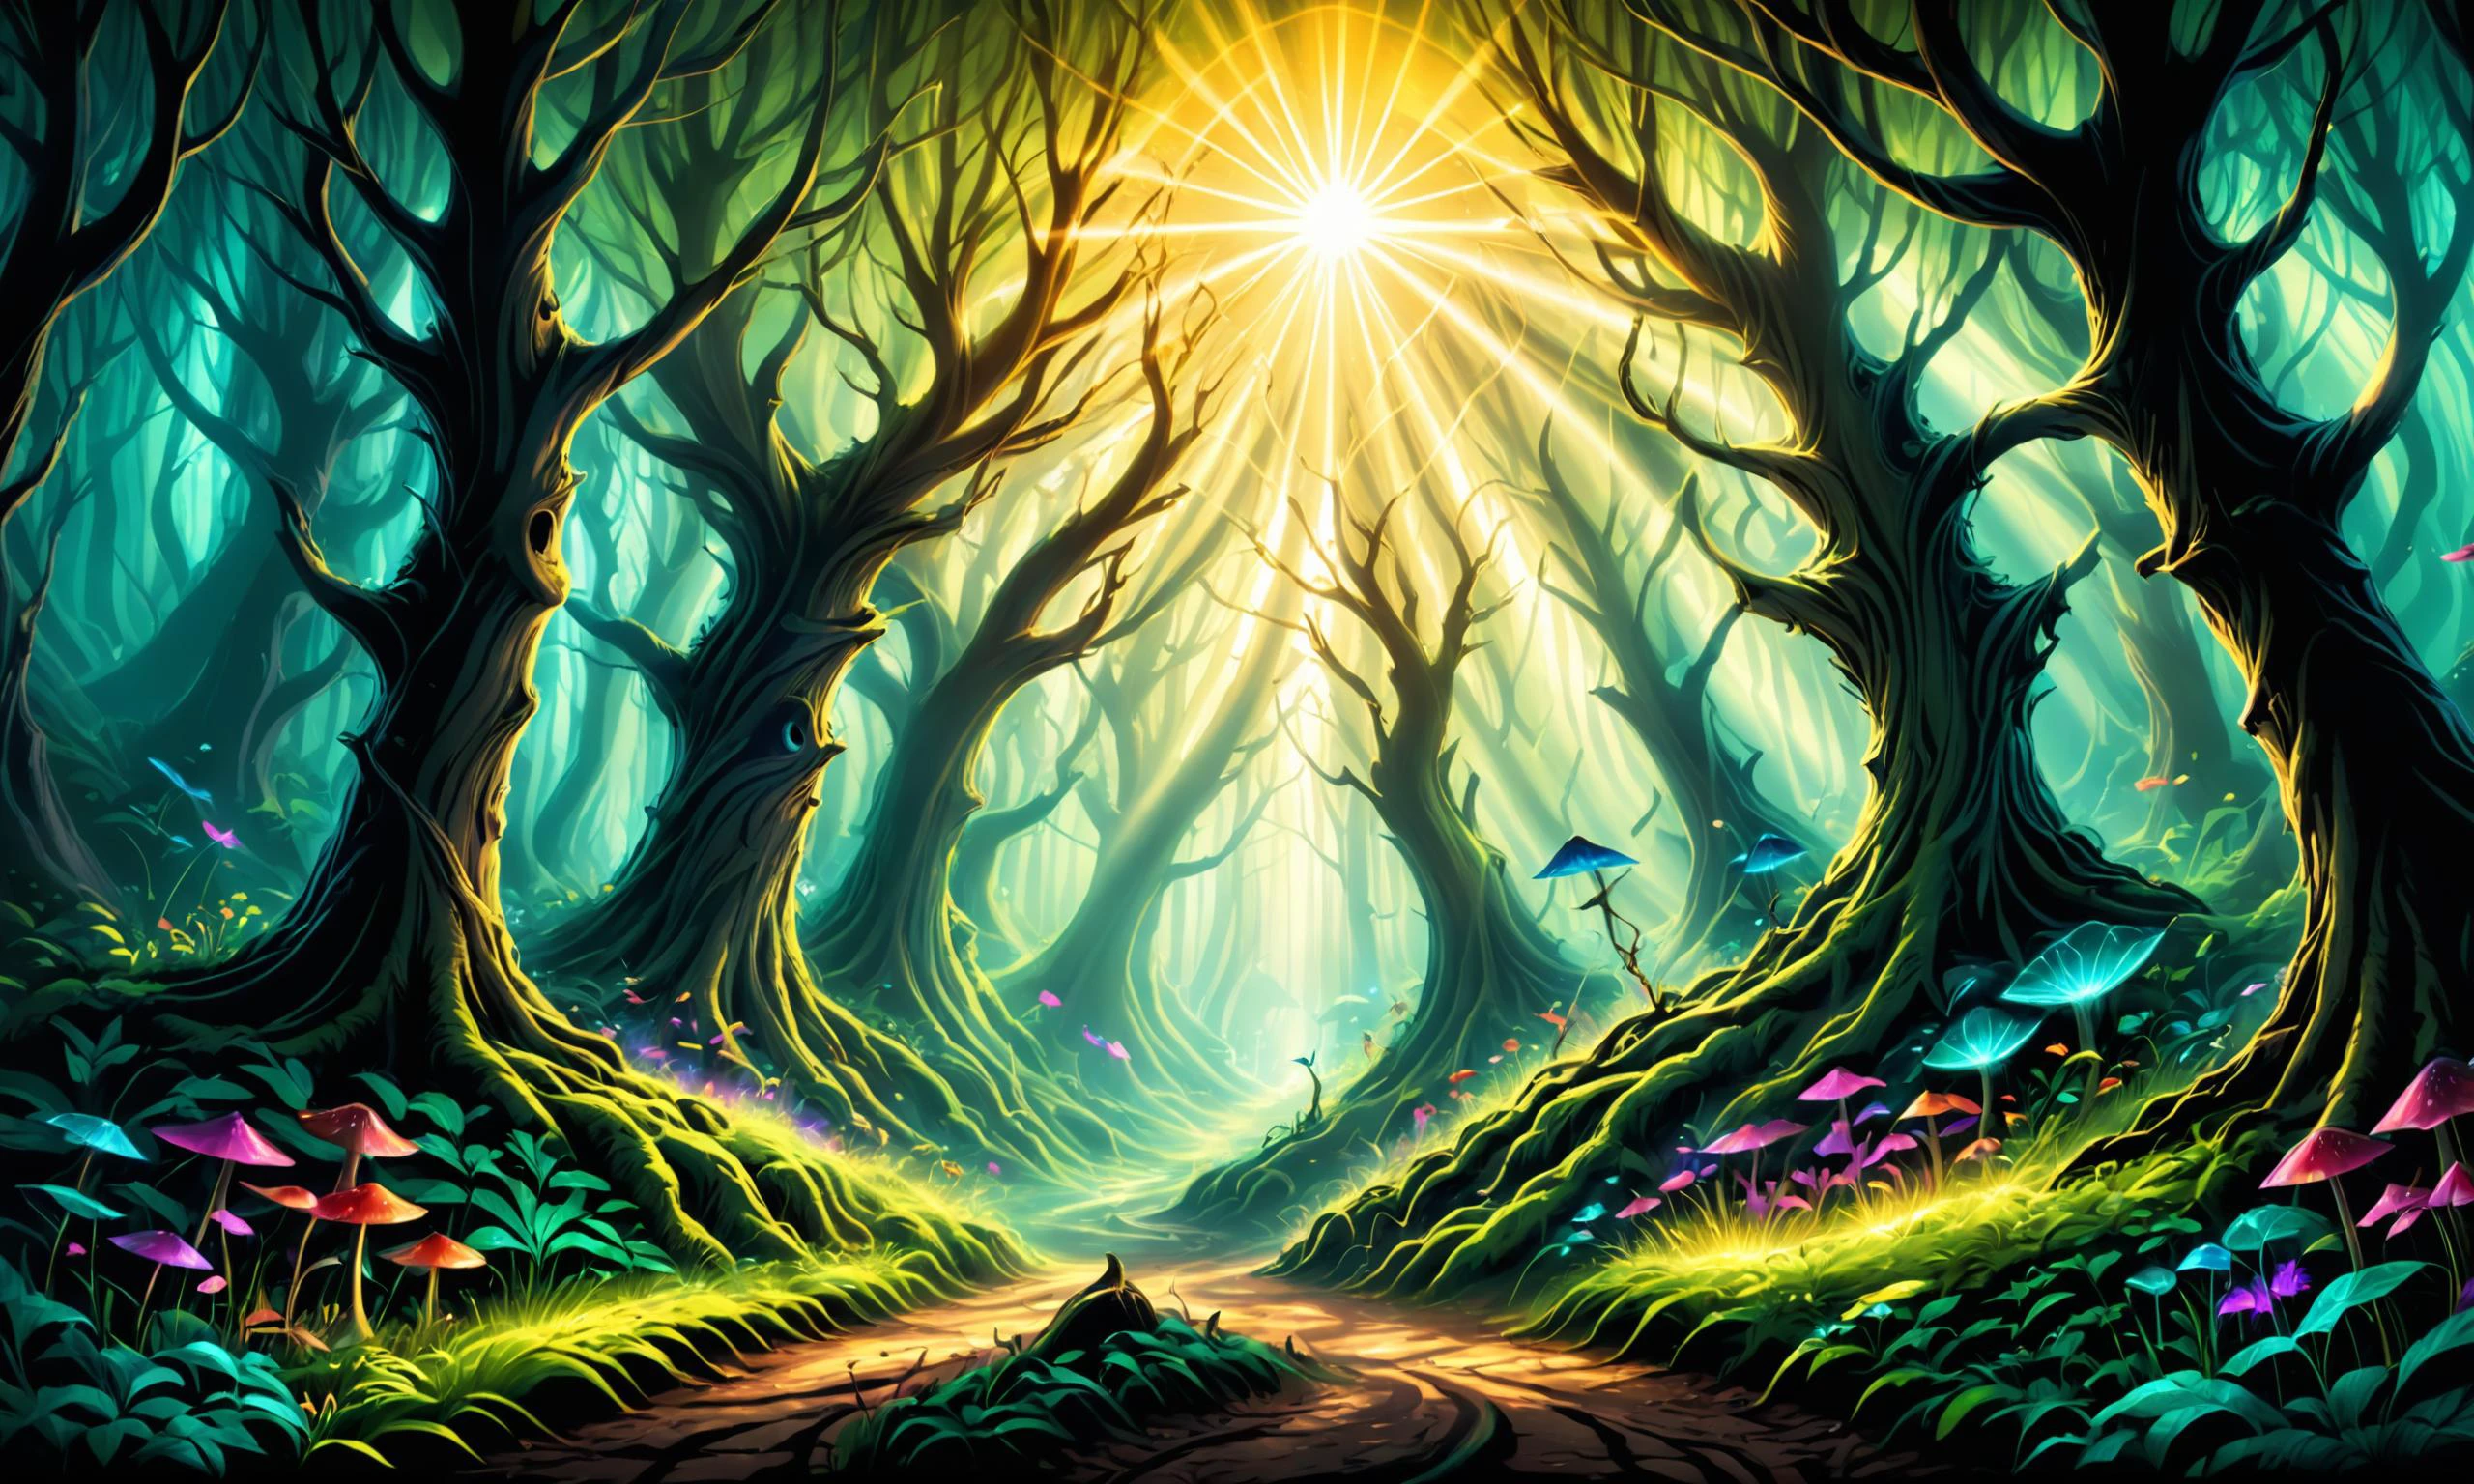 Hermosa ilustración digital detallada de un bosque encantado con criaturas místicas Angst, rayos de sol